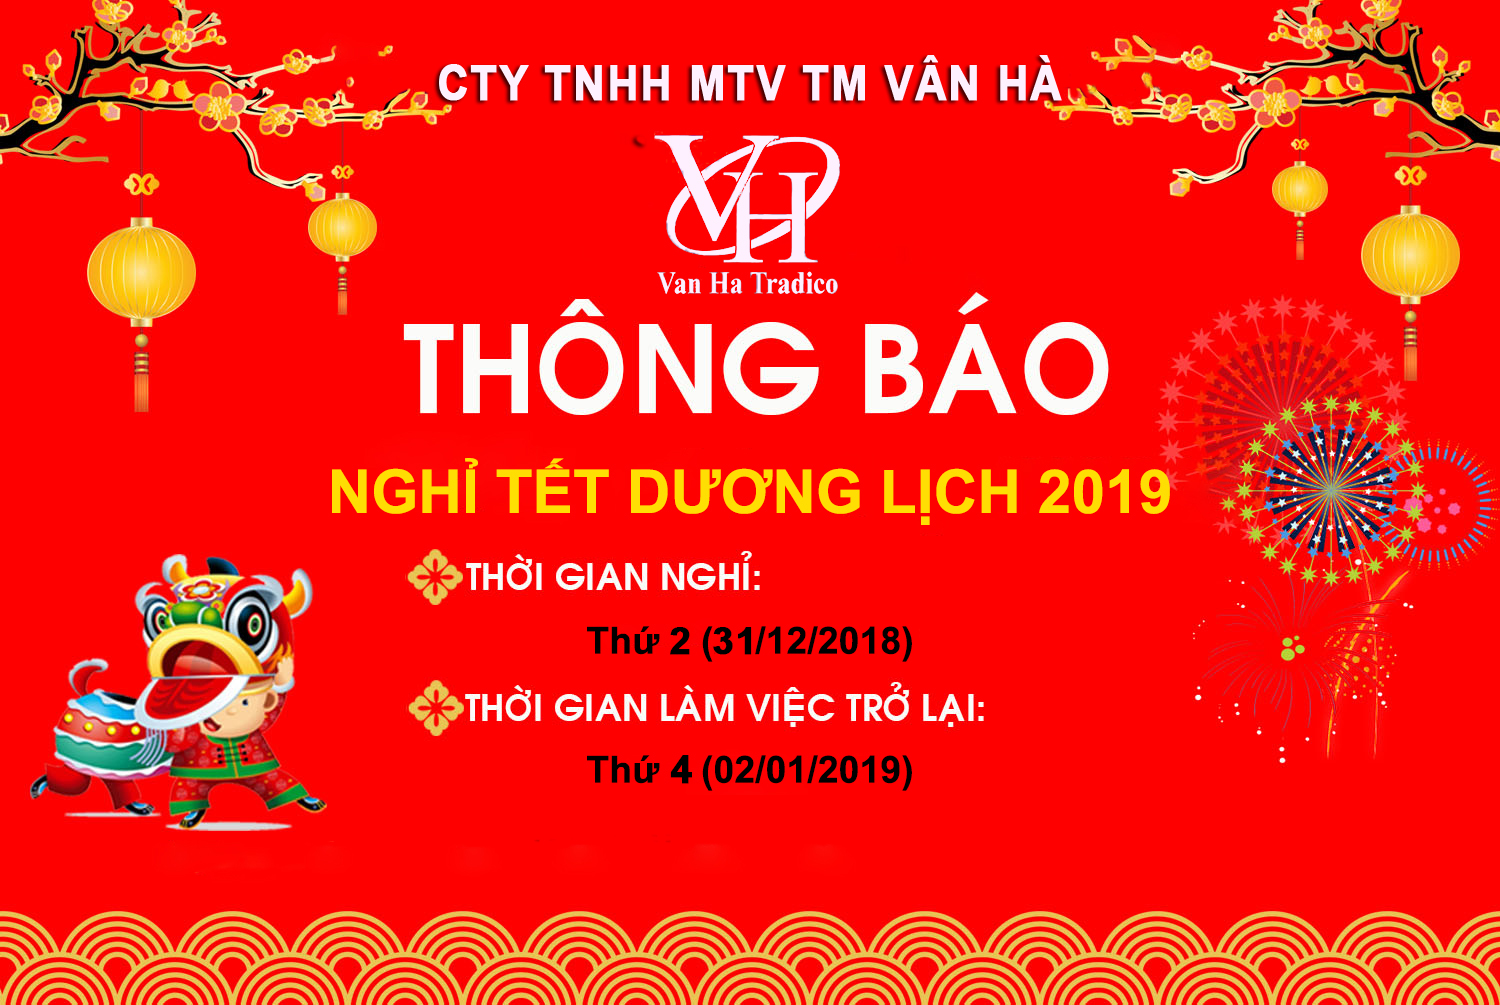 nghỈ dƯƠng lỊch - Công ty TNHH TM Vân Hà: Thông báo lịch nghỉ tết Dương lịch 2019